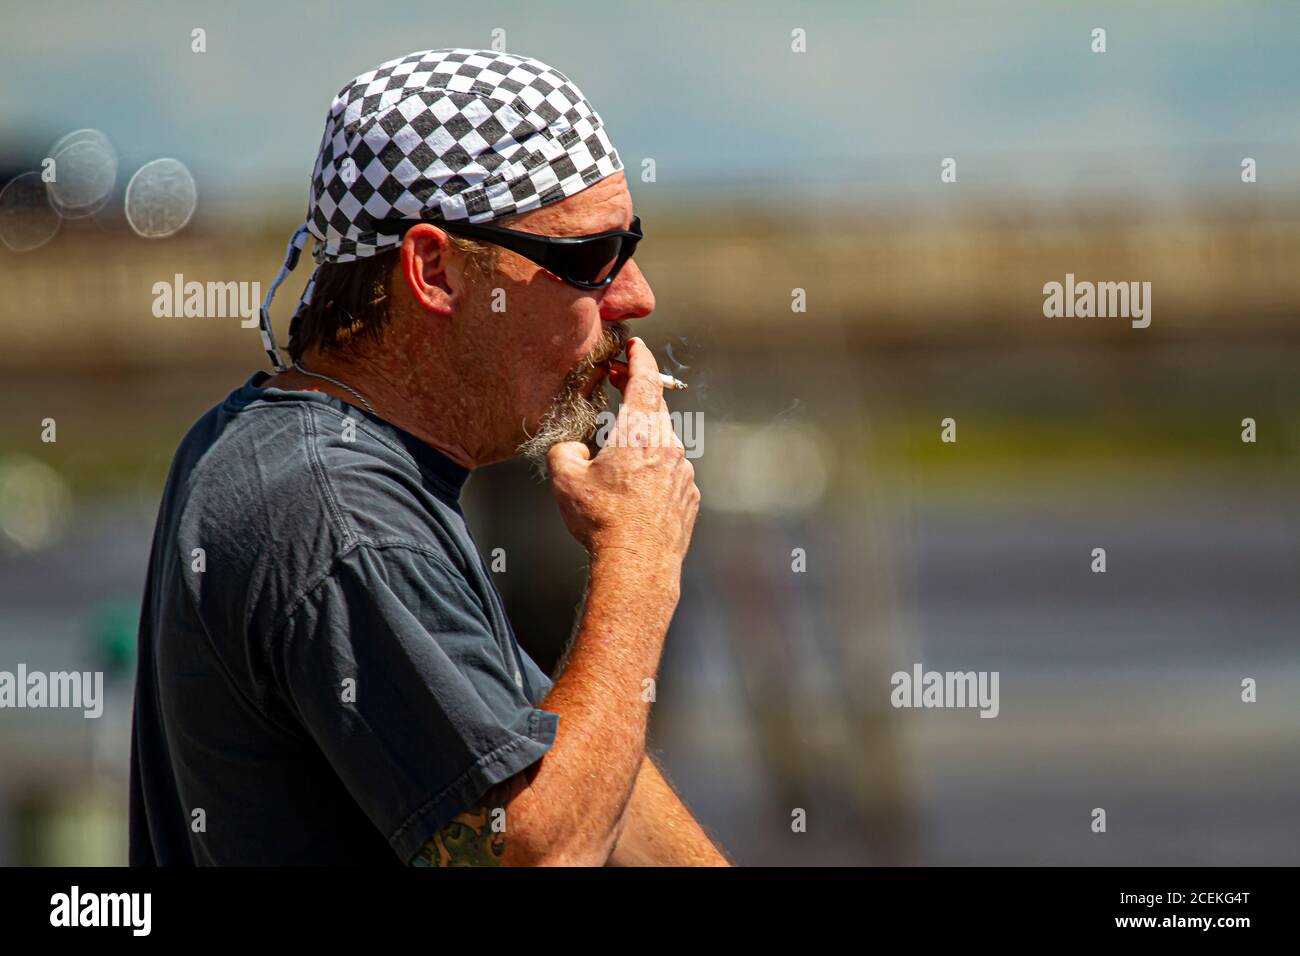 Chestertown, MD, États-Unis 08/30/2020: Image de profil d'un homme de bascule caucasien d'âge moyen portant un damier modèle bandanna et lunettes de soleil est fumin Banque D'Images